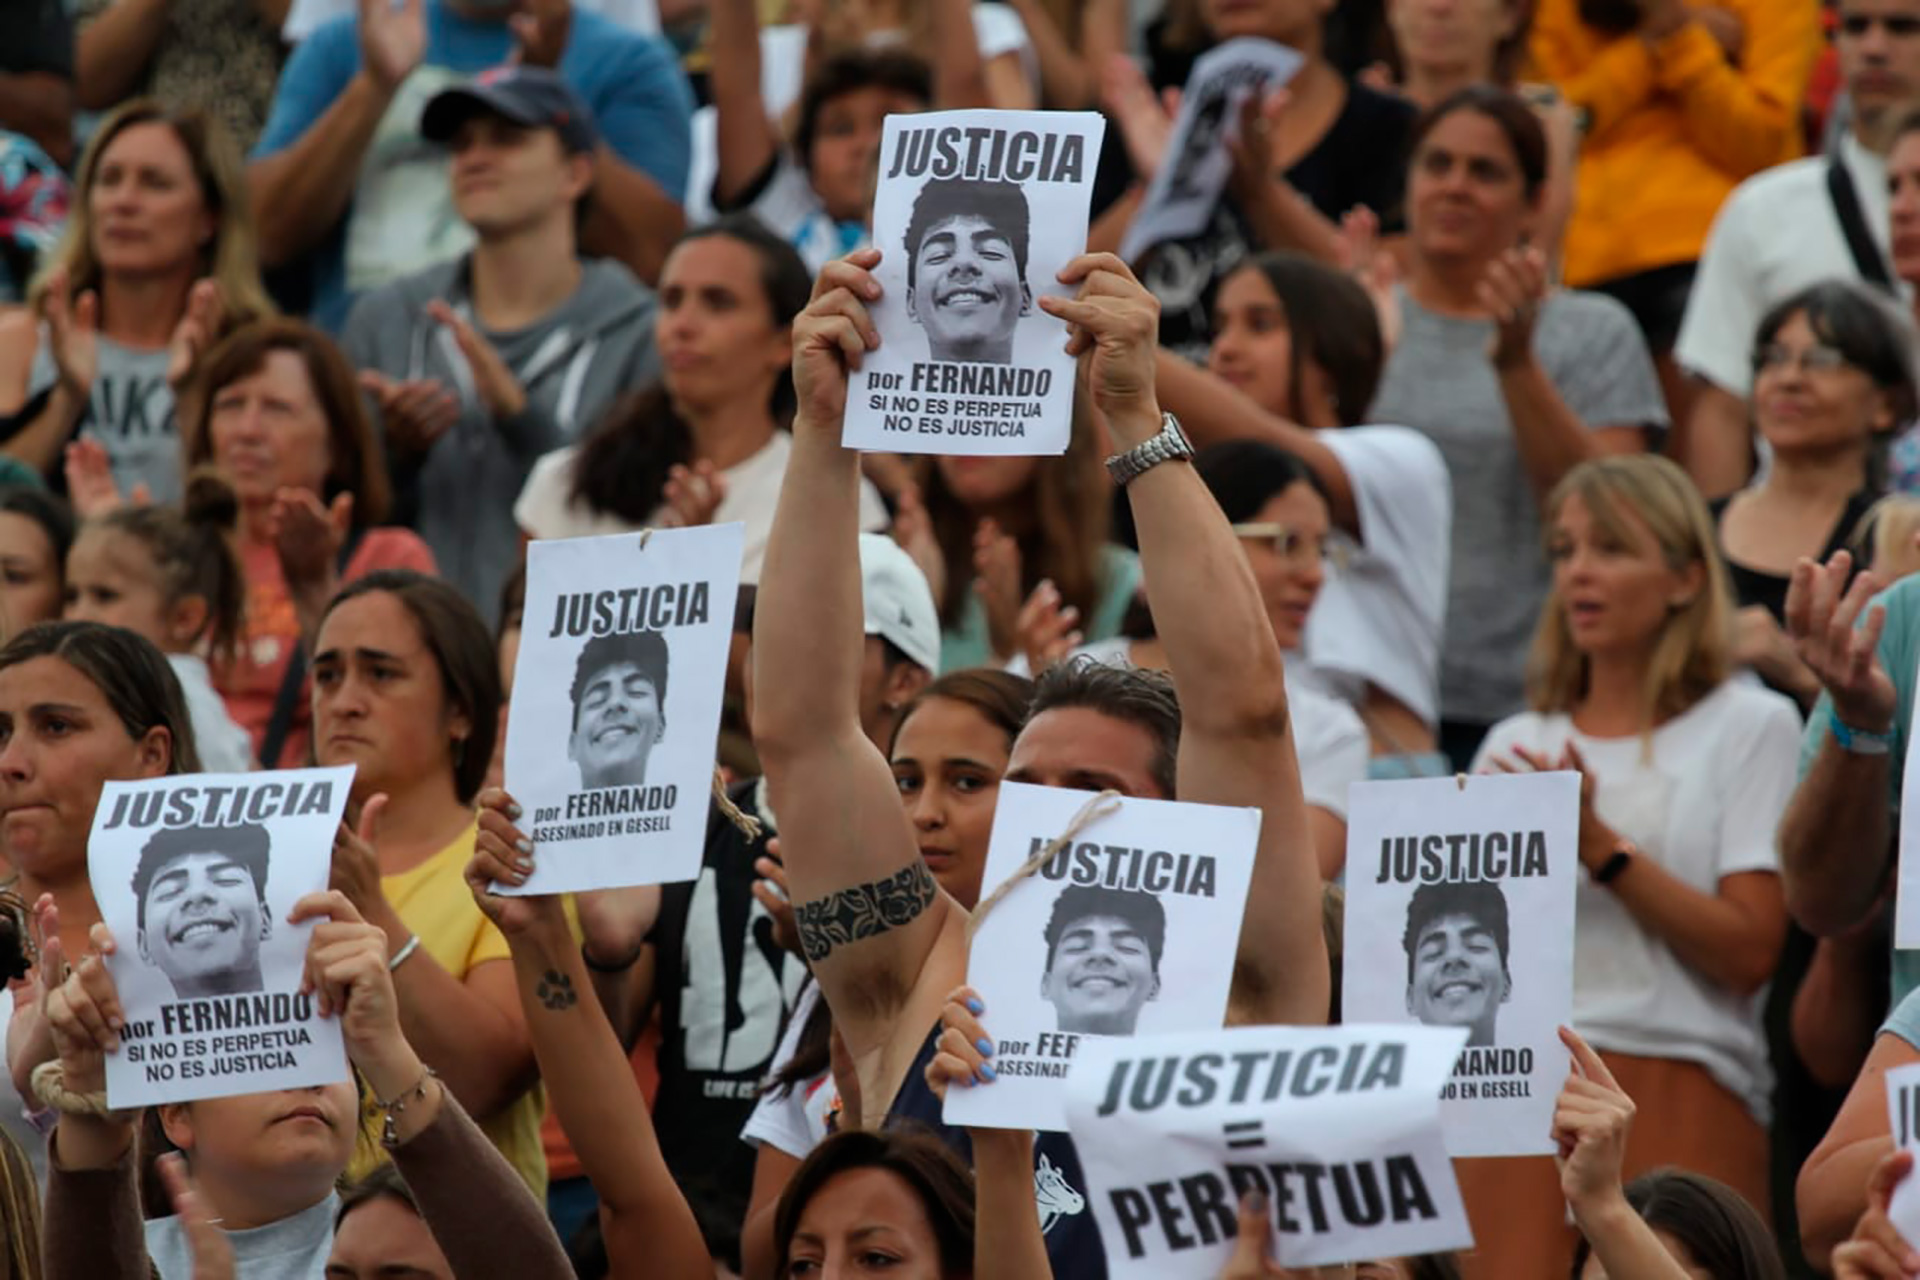 La cara de Fernando se multiplica en los carteles que piden "justicia"
